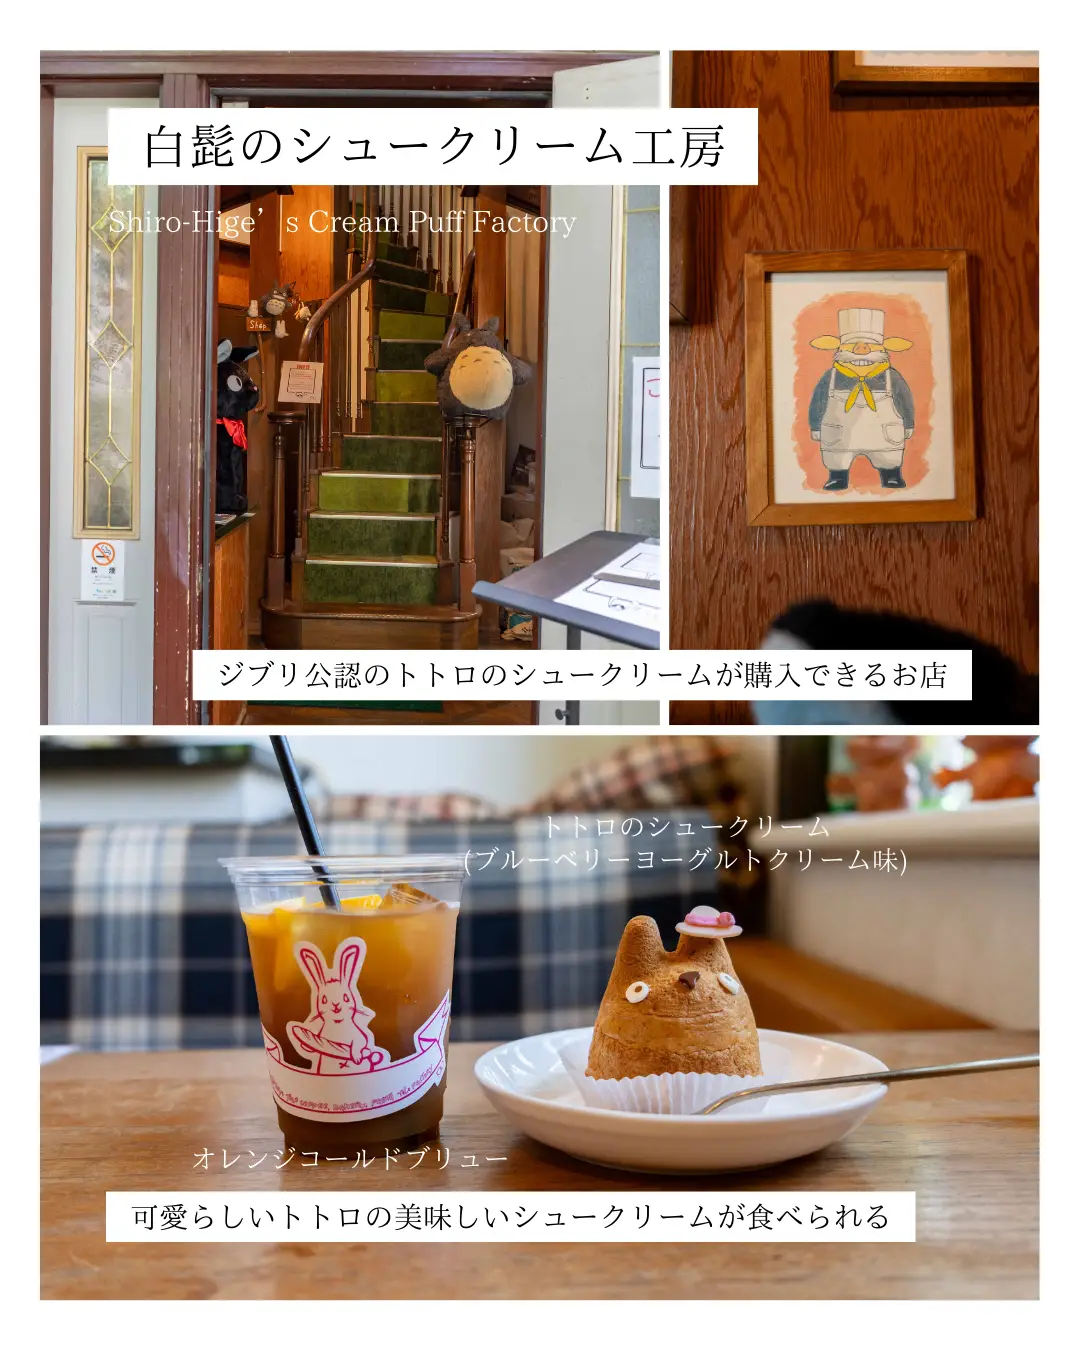 東京で「ジブリ」施設を巡った一日の画像 (4枚目)